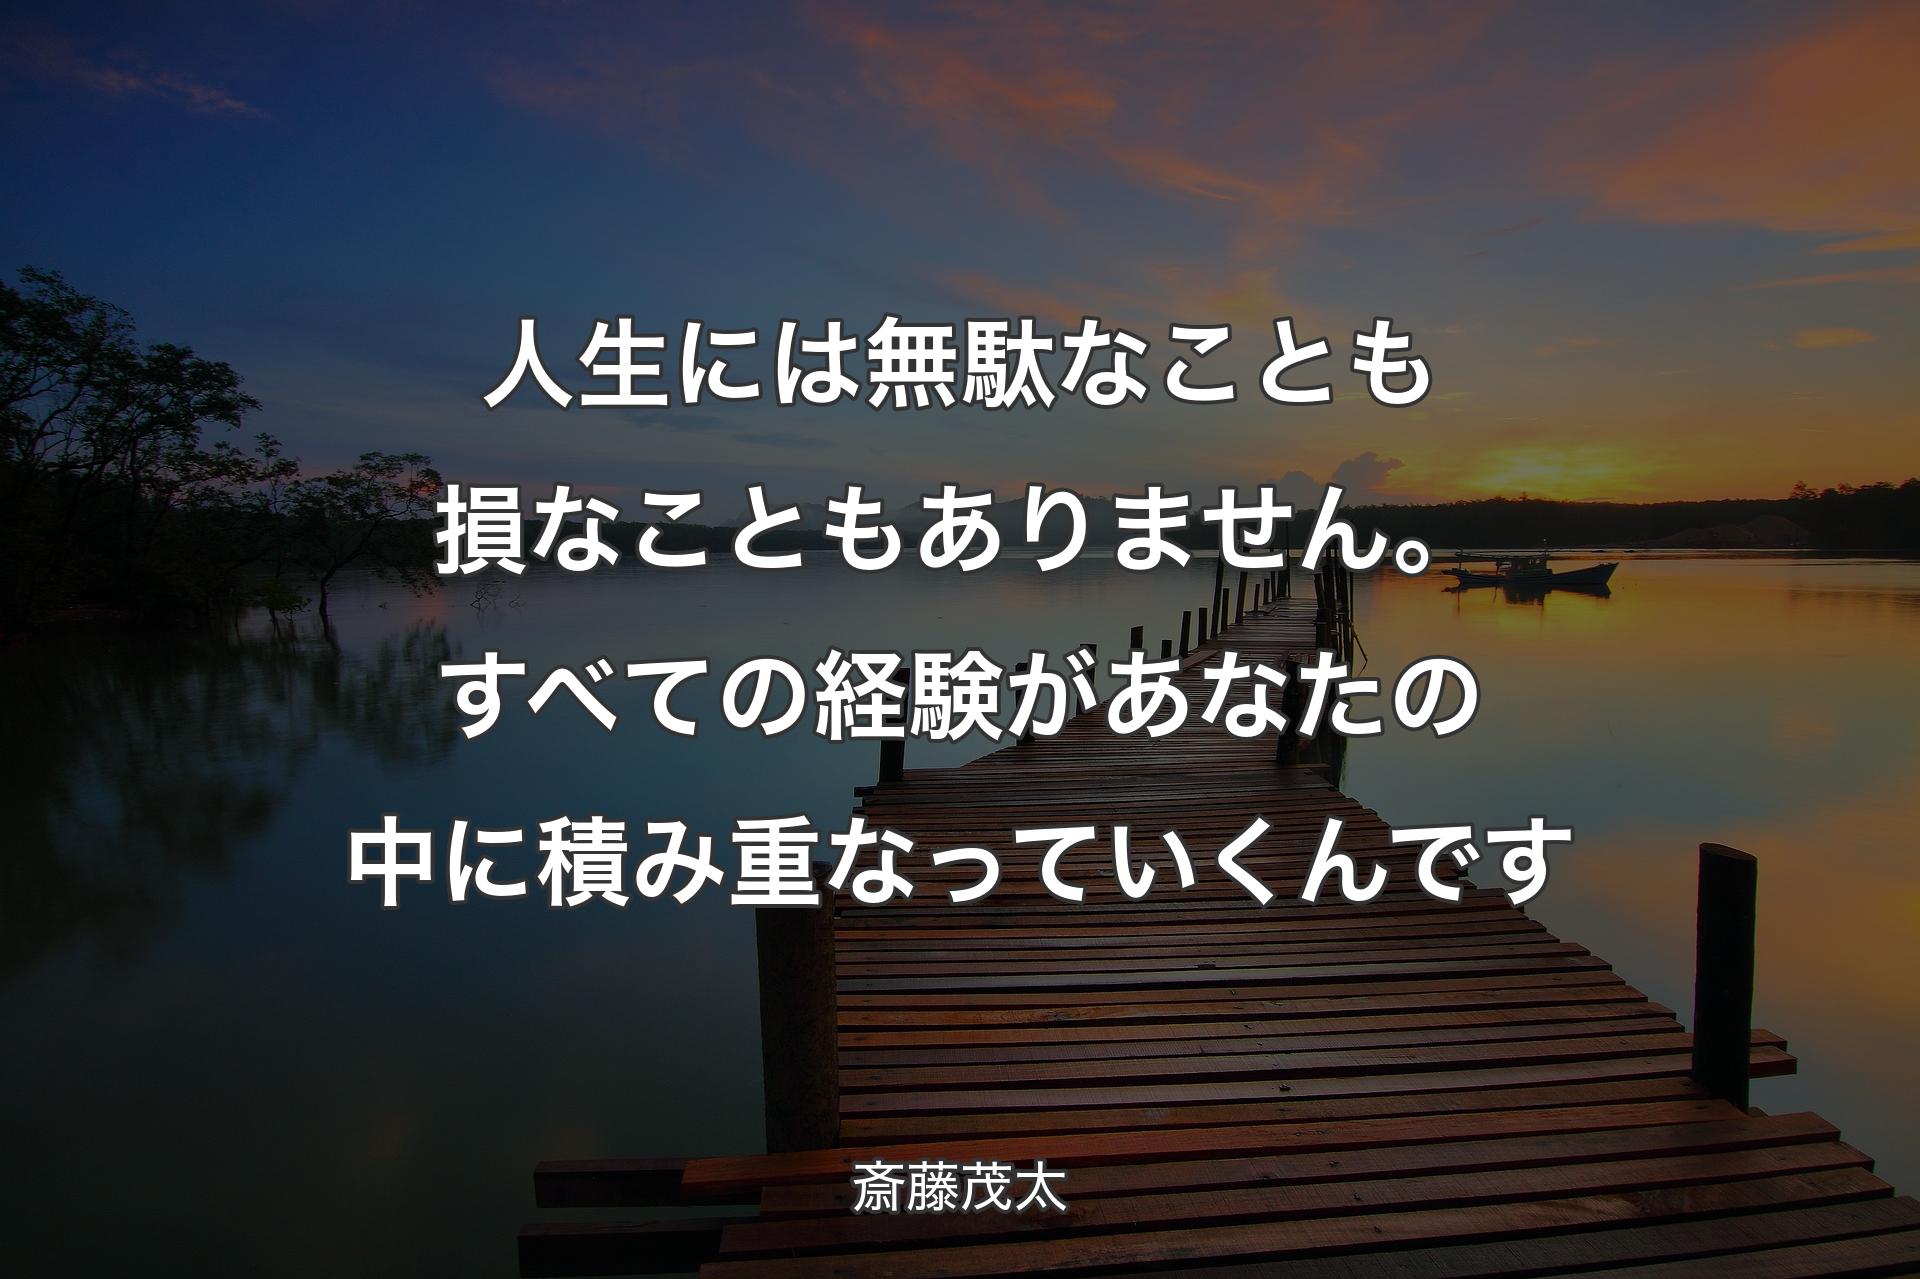 人生には無駄なことも損なこともありません。すべての経験があなたの中に積み重なっていくんです - 斎藤茂太